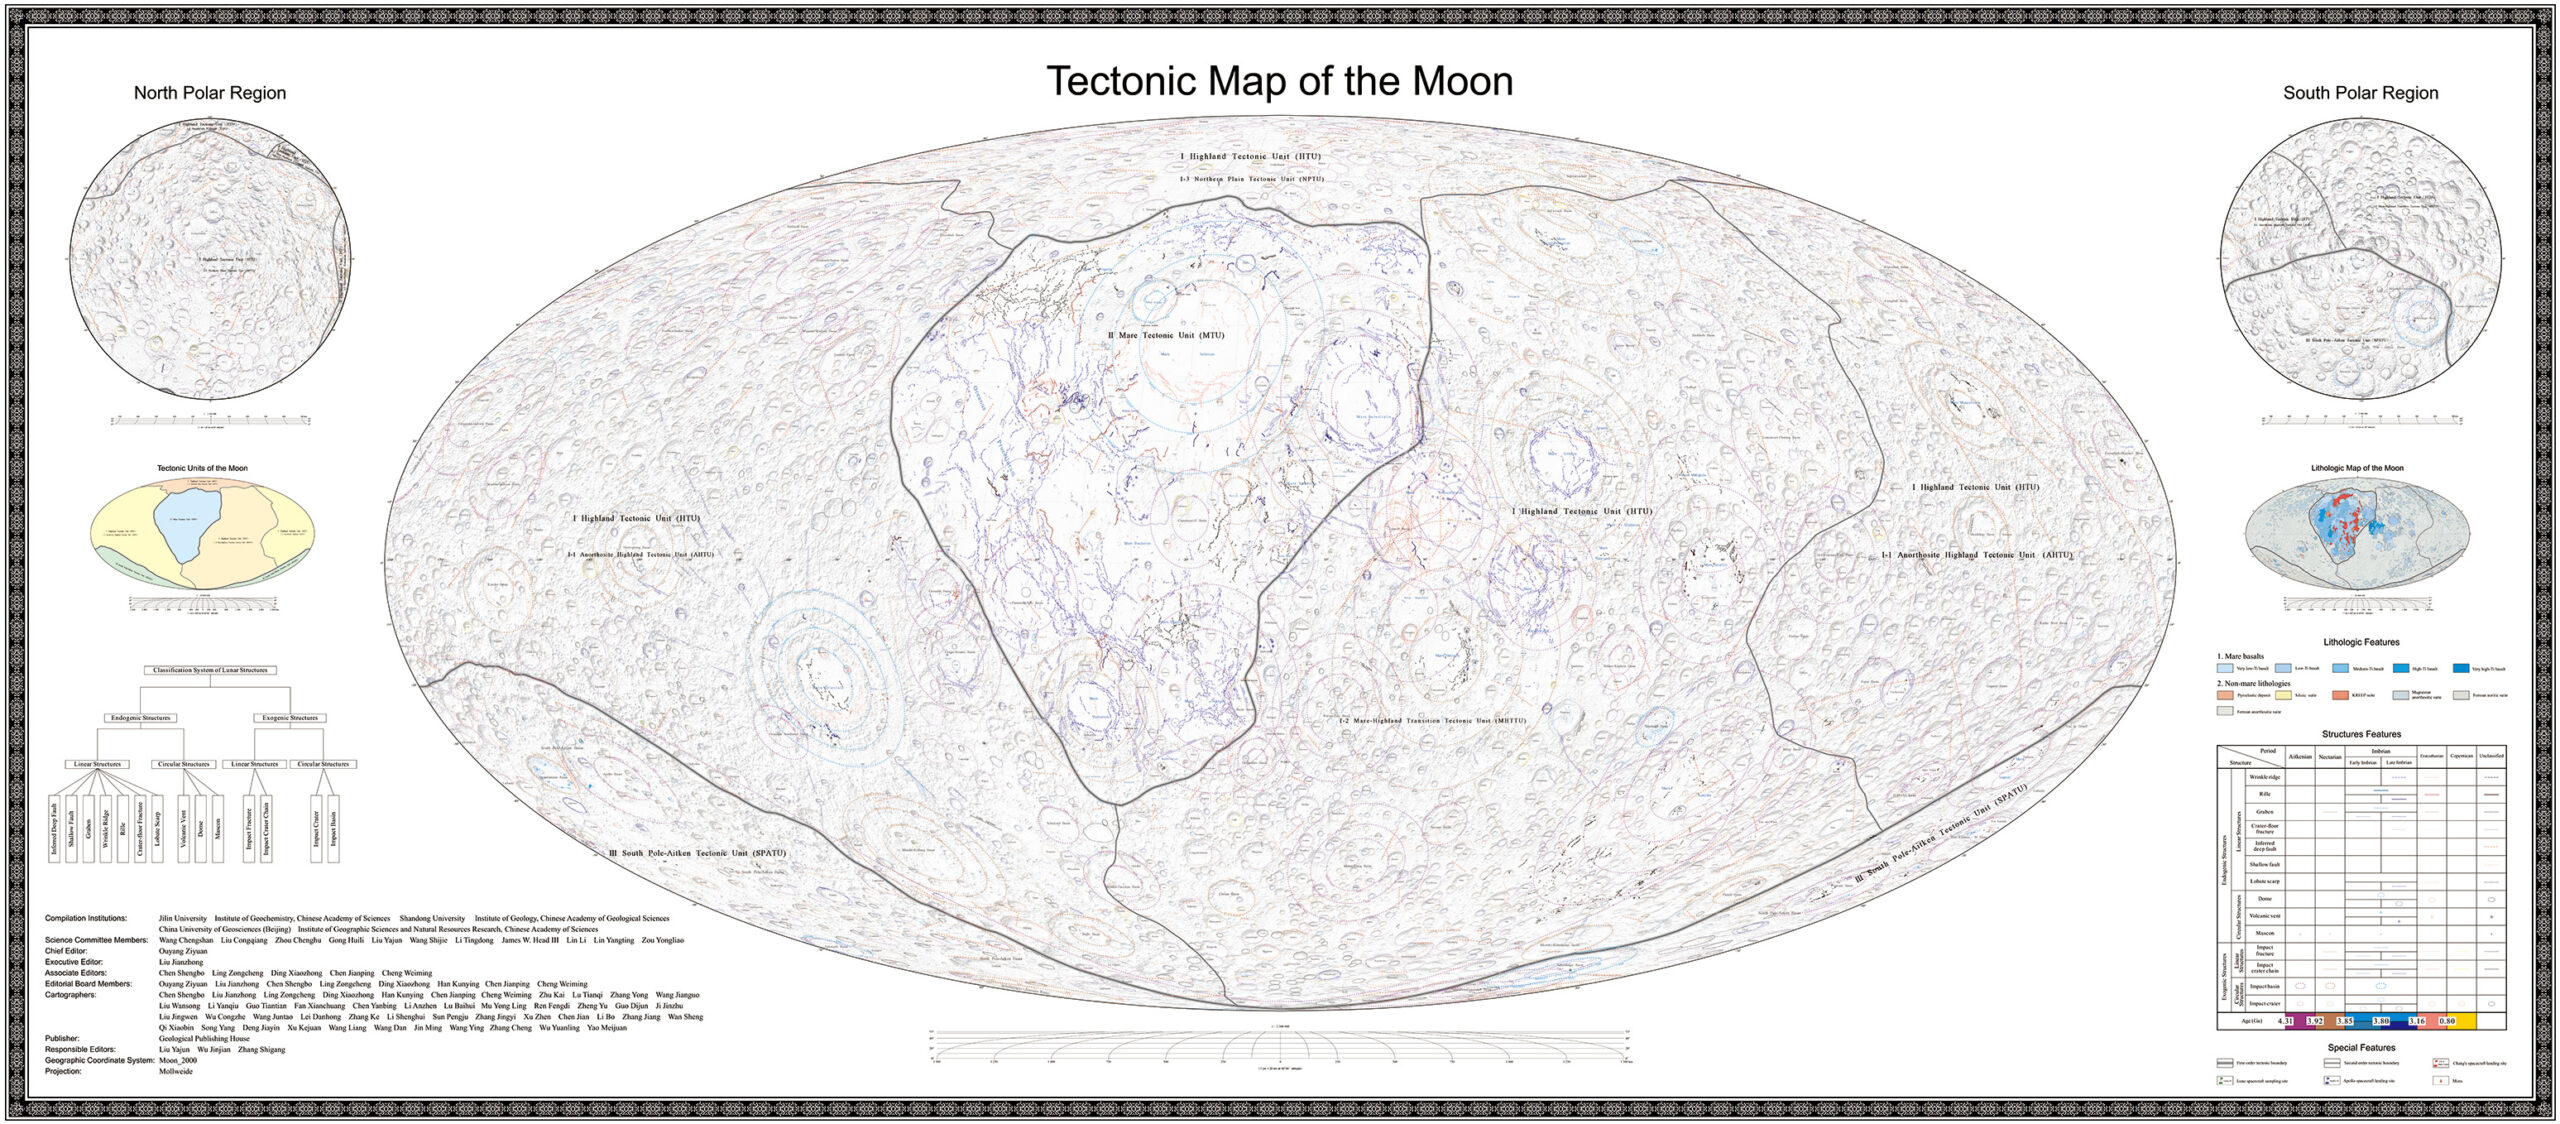 แผนที่ทางธรณีวิทยาของดวงจันทร์ (ภาพโดยสถาบันบัณฑิตวิทยาศาสตร์จีน จัดหาโดย Xinhua)